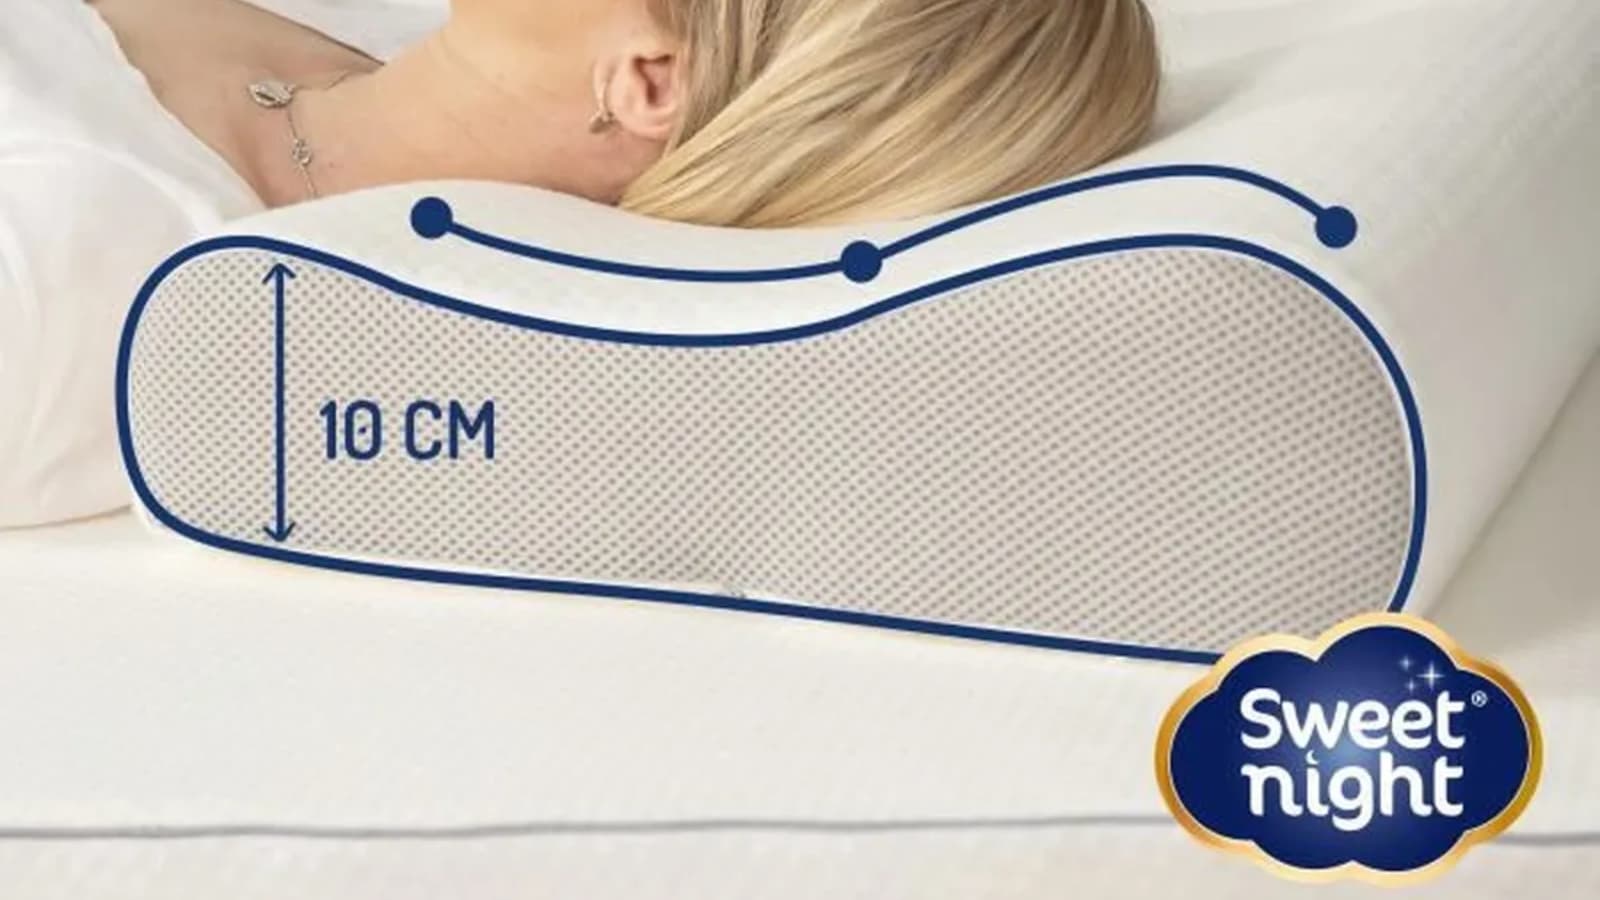 Cet oreiller pour cervicales est très bien noté et profite d'un